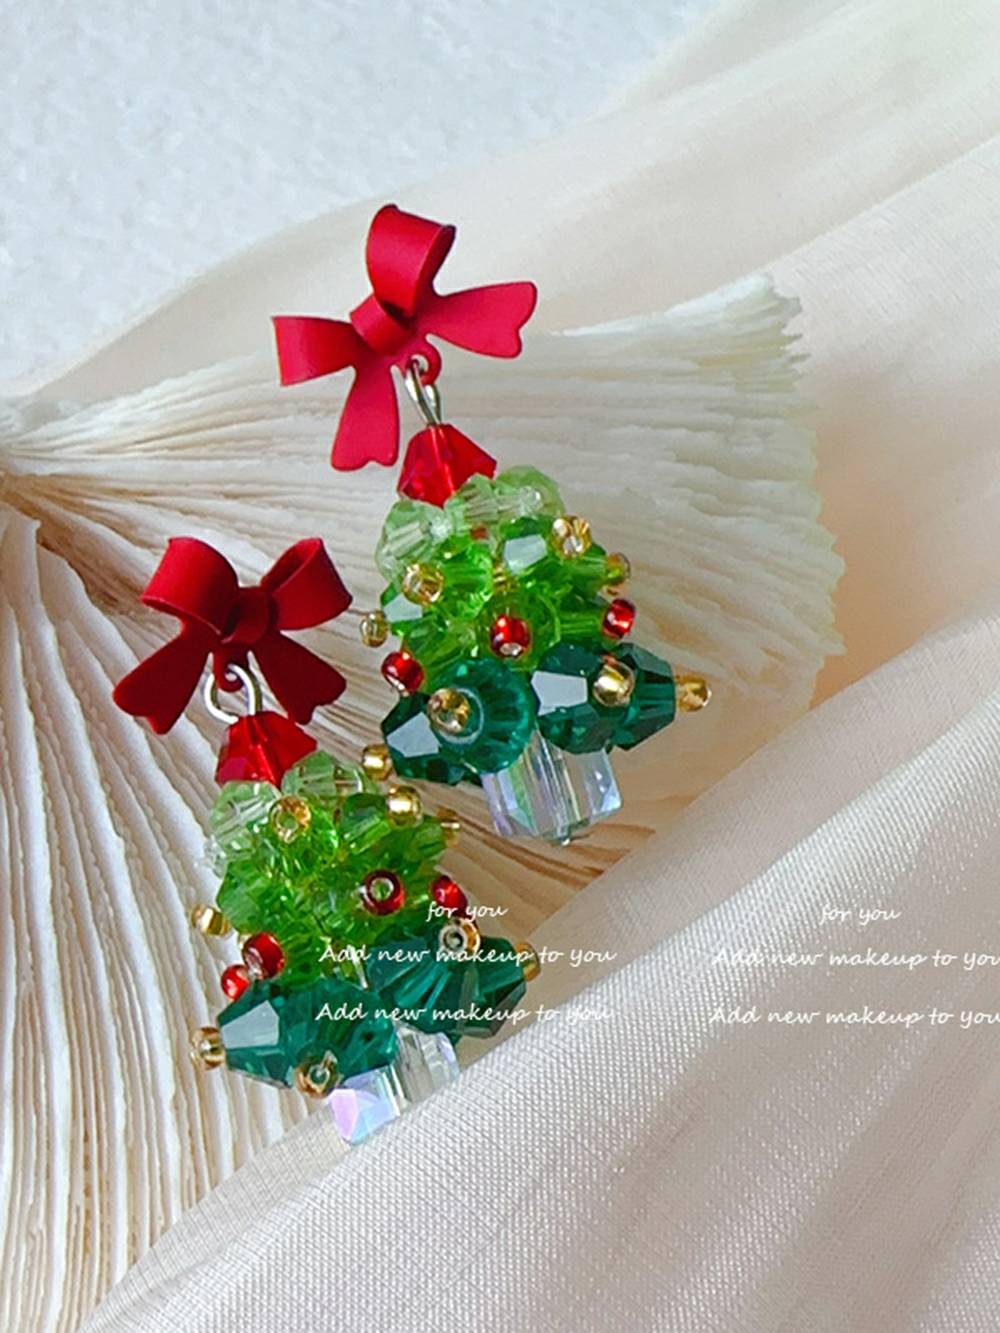 Χειροποίητα κρυστάλλινα σκουλαρίκια από χριστουγεννιάτικο δέντρο με χάντρες